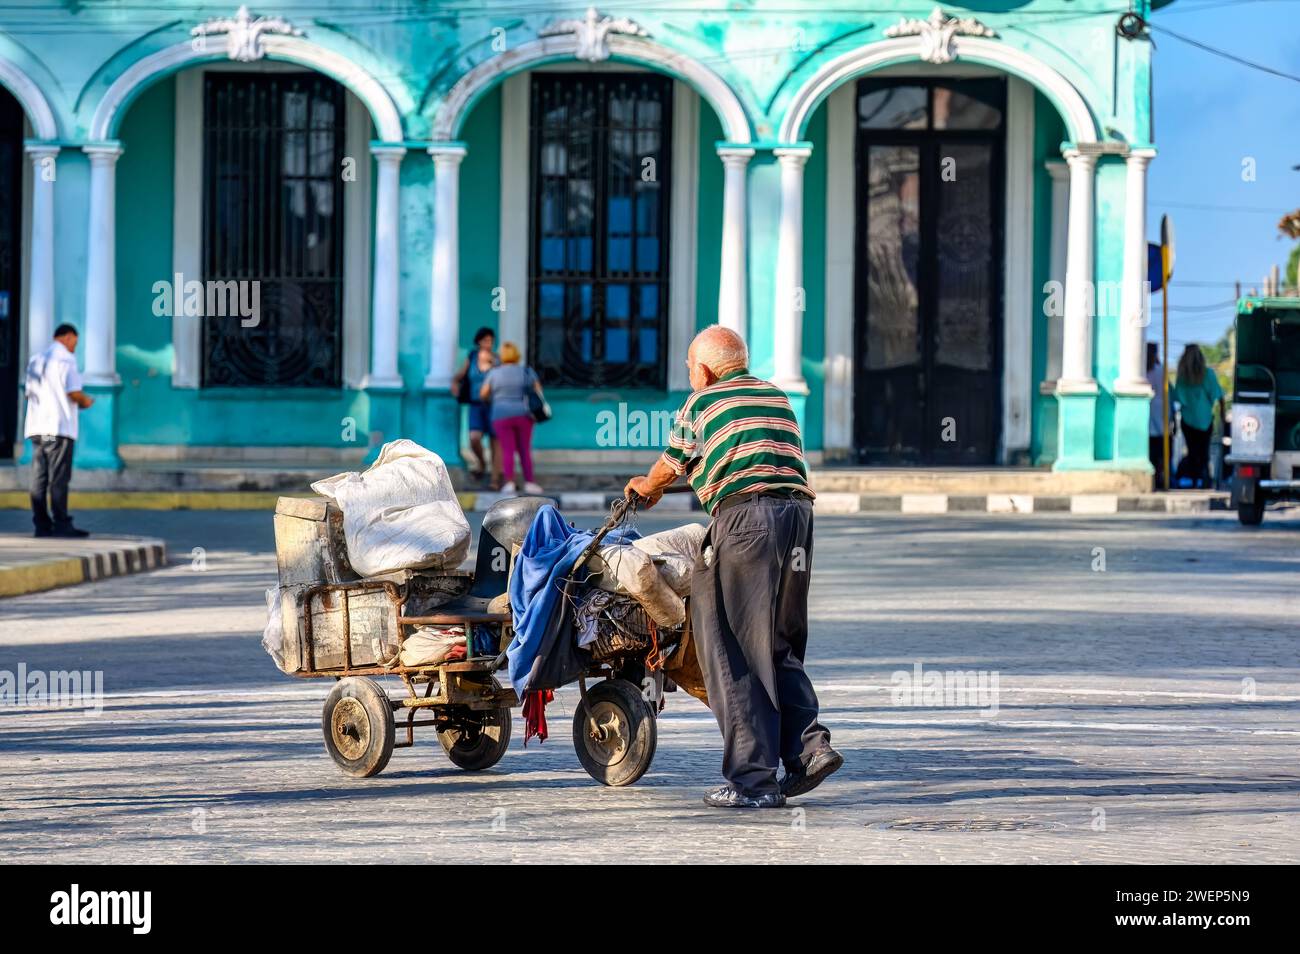 senior man pushing car, santa clara, cuba Stock Photo